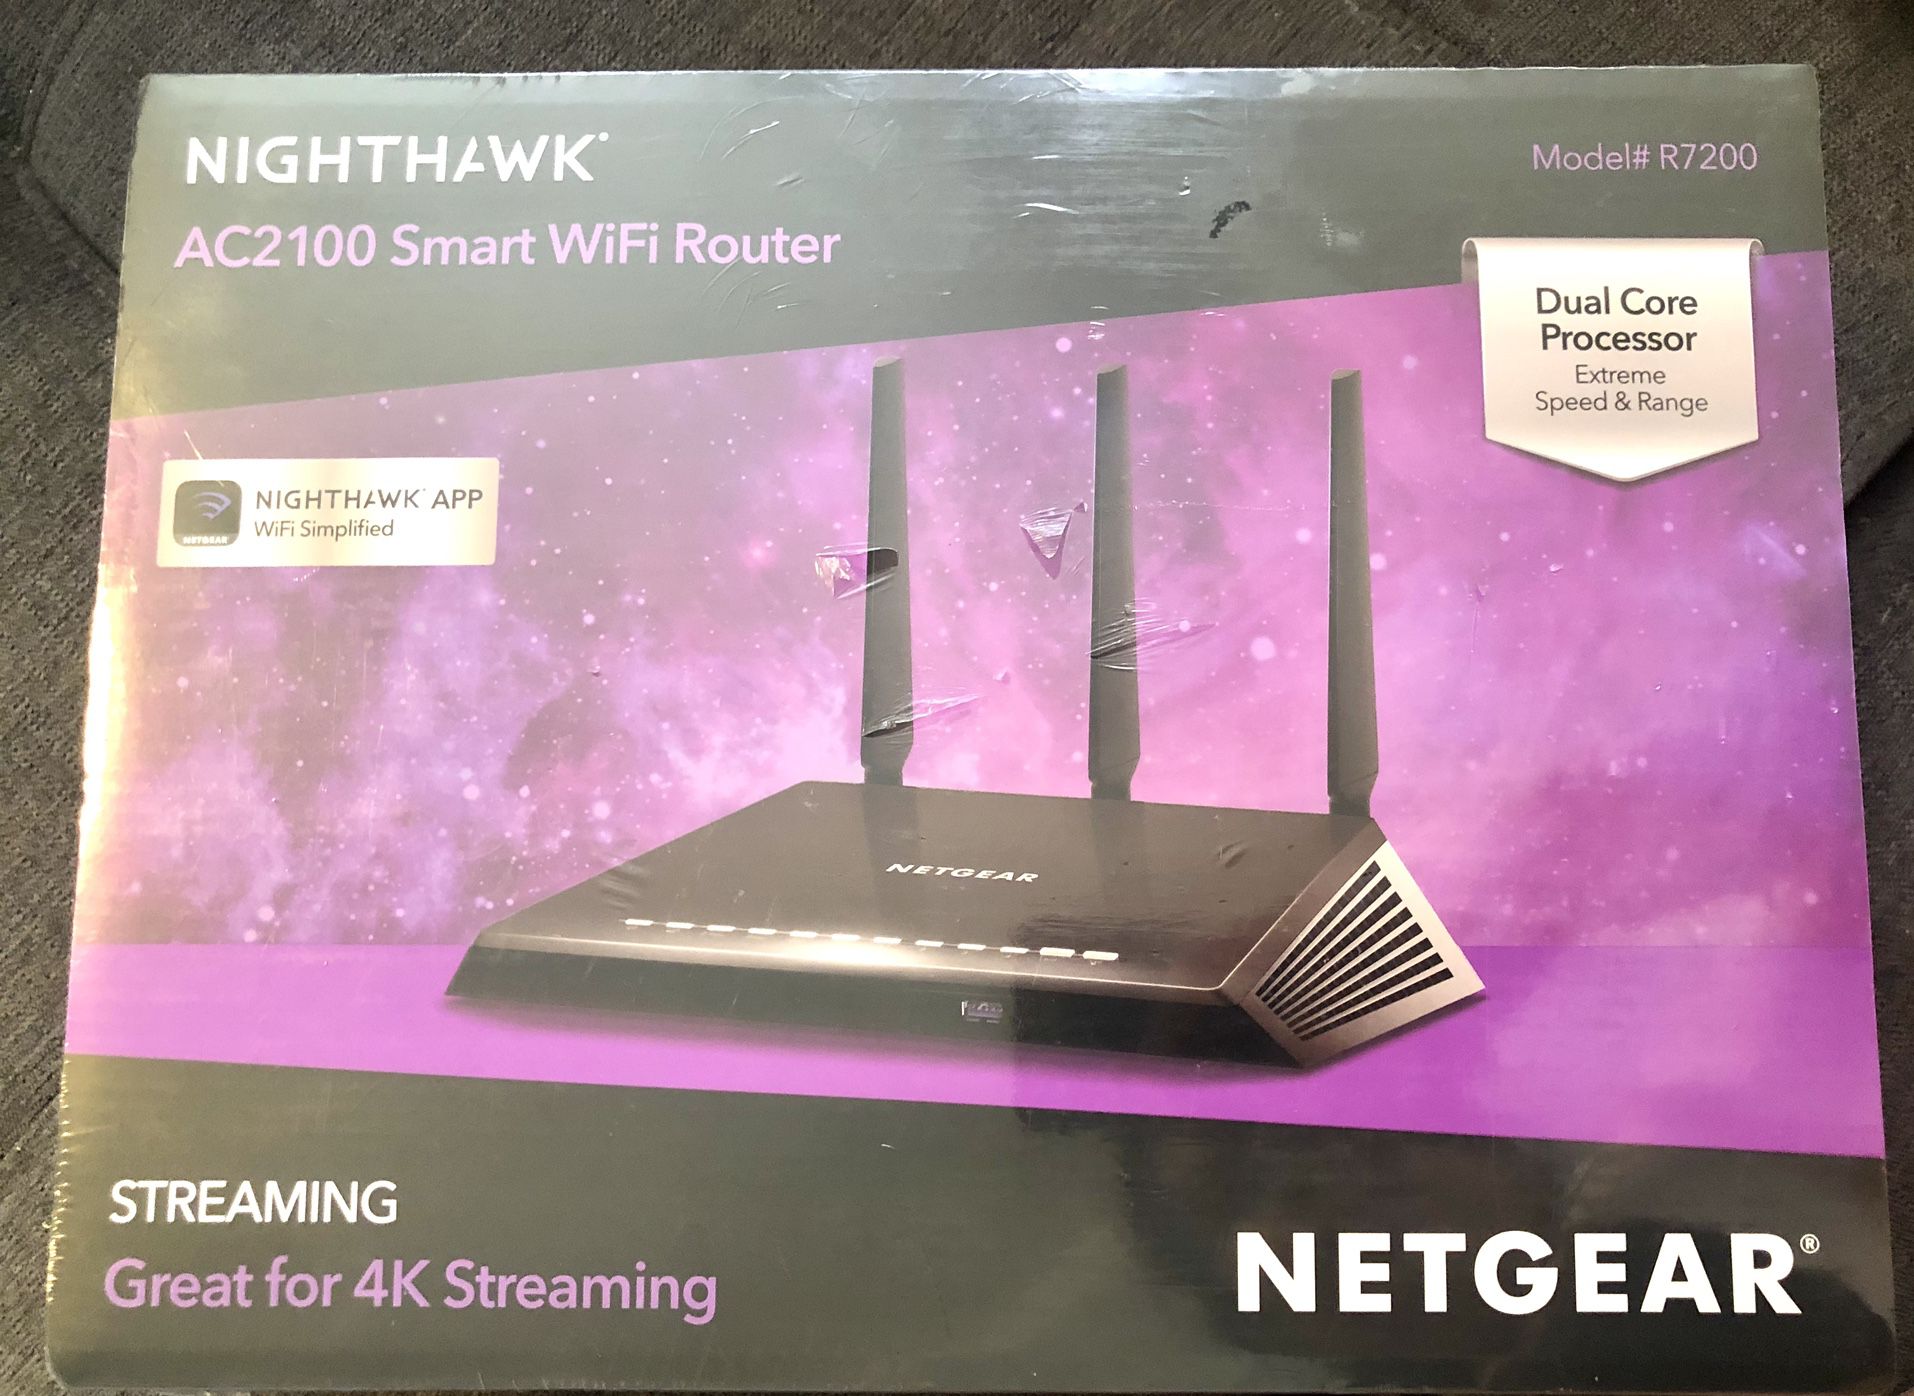 Netgear Nighthawk AC2100 Smart WiFi Router, R7200, 4K